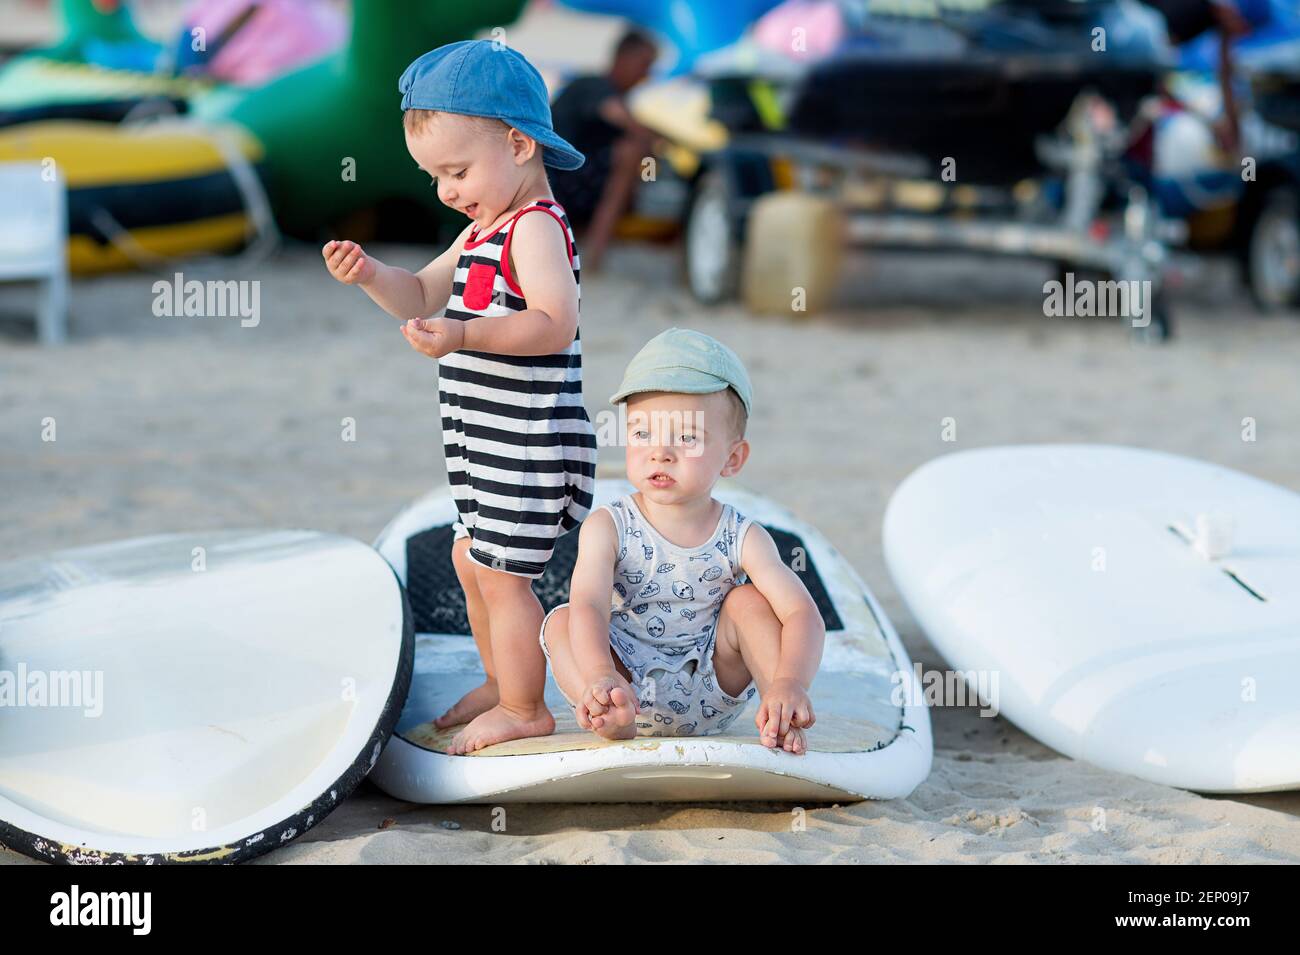 Zwillingsbrüder im Sommer Outfit spielen auf einem Brett in Windsurfing Camp Stockfoto